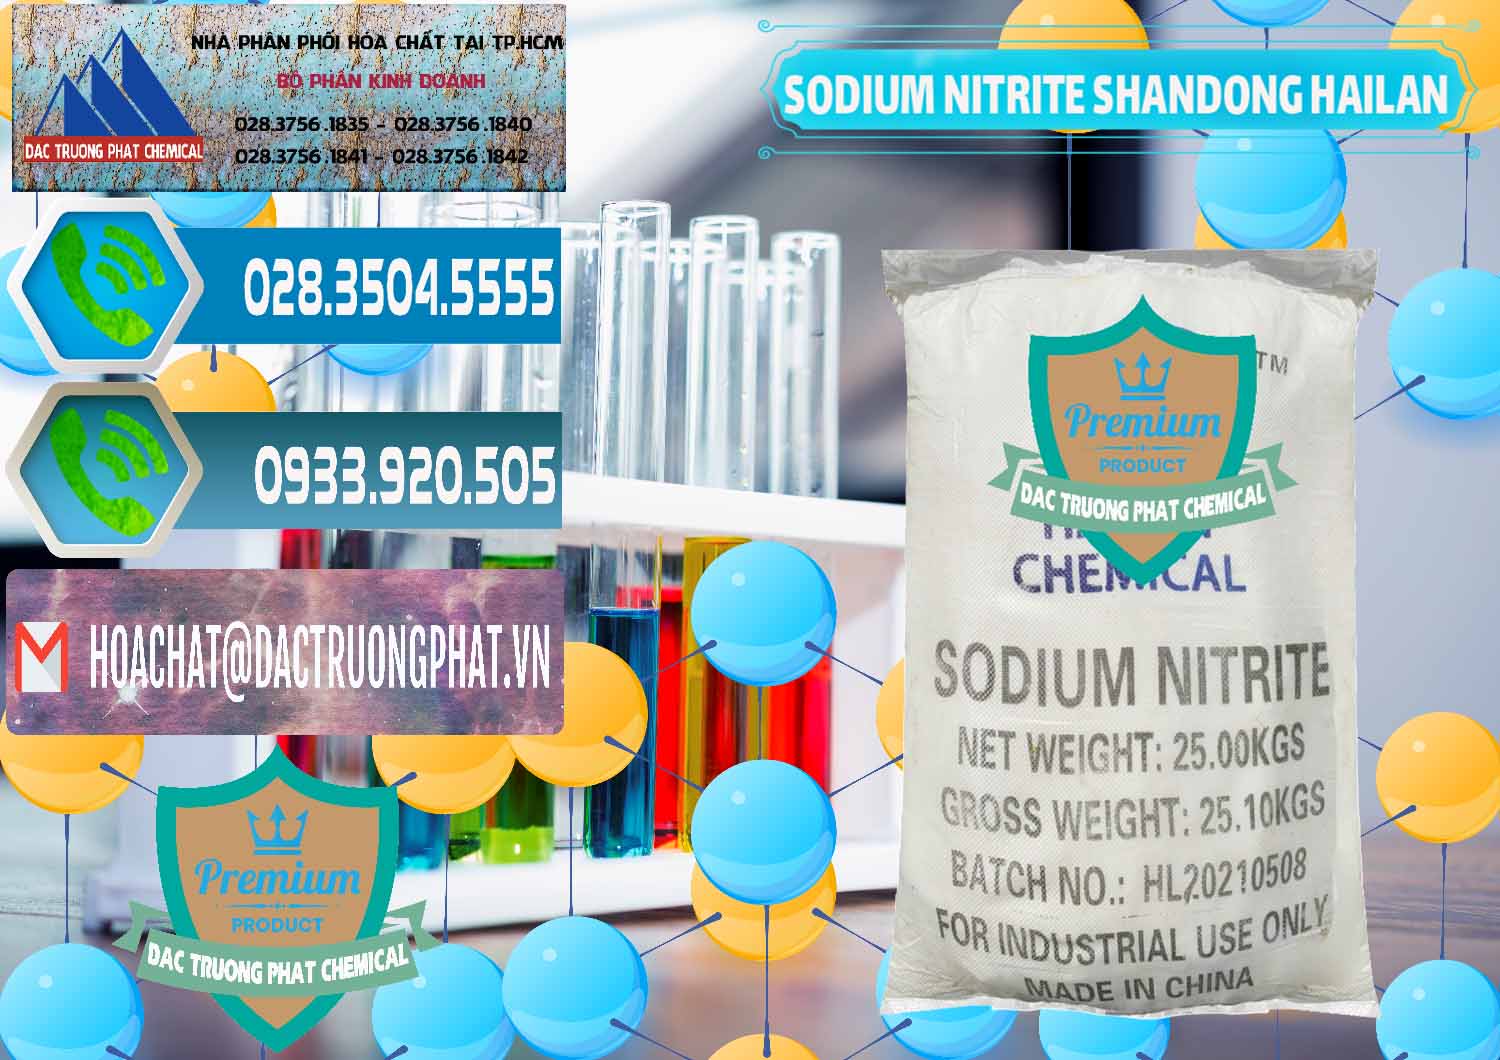 Cty kinh doanh ( bán ) Sodium Nitrite - NANO2 99.3% Shandong Hailan Trung Quốc China - 0284 - Cty nhập khẩu - cung cấp hóa chất tại TP.HCM - congtyhoachat.net